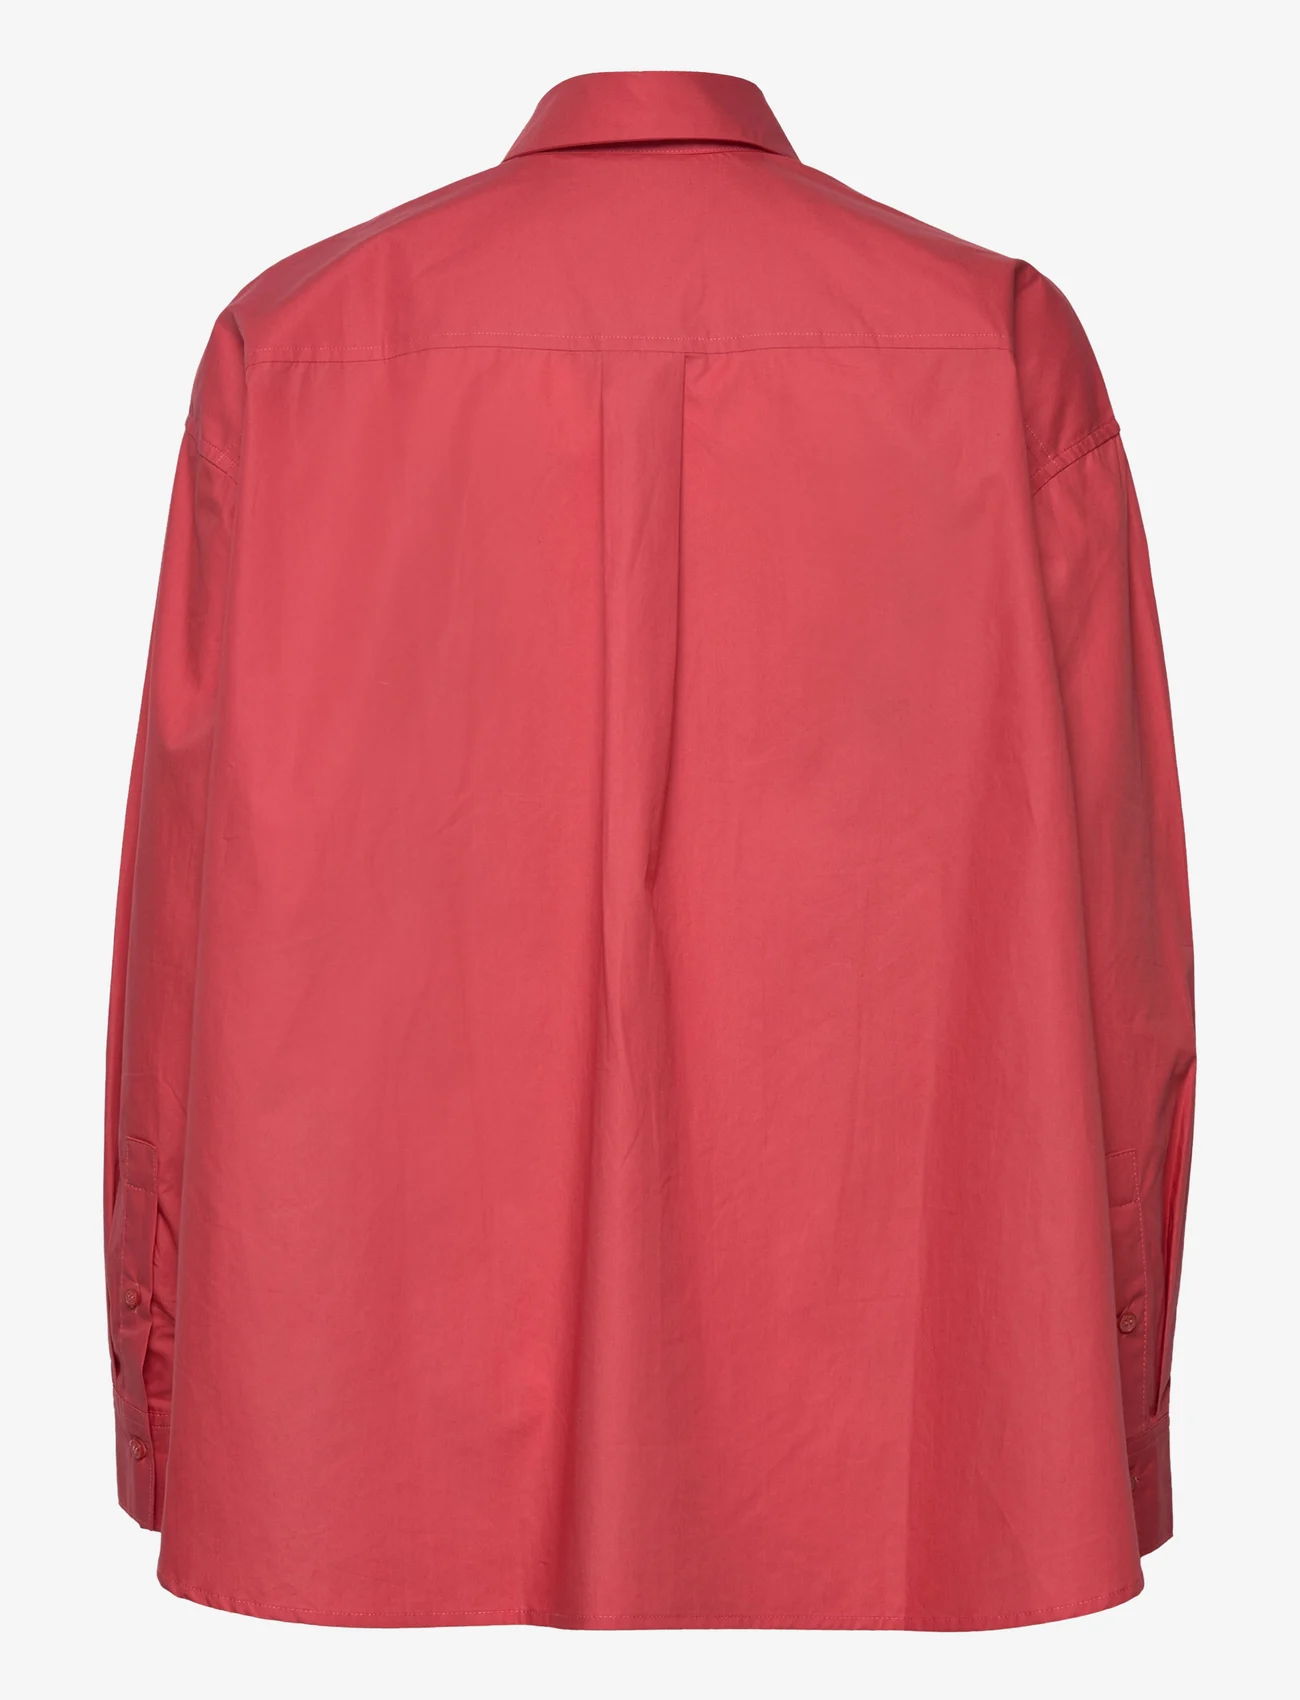 IVY OAK - BETHANY LILLY WIDE BLOUSE - marškiniai ilgomis rankovėmis - berry glaze - 1